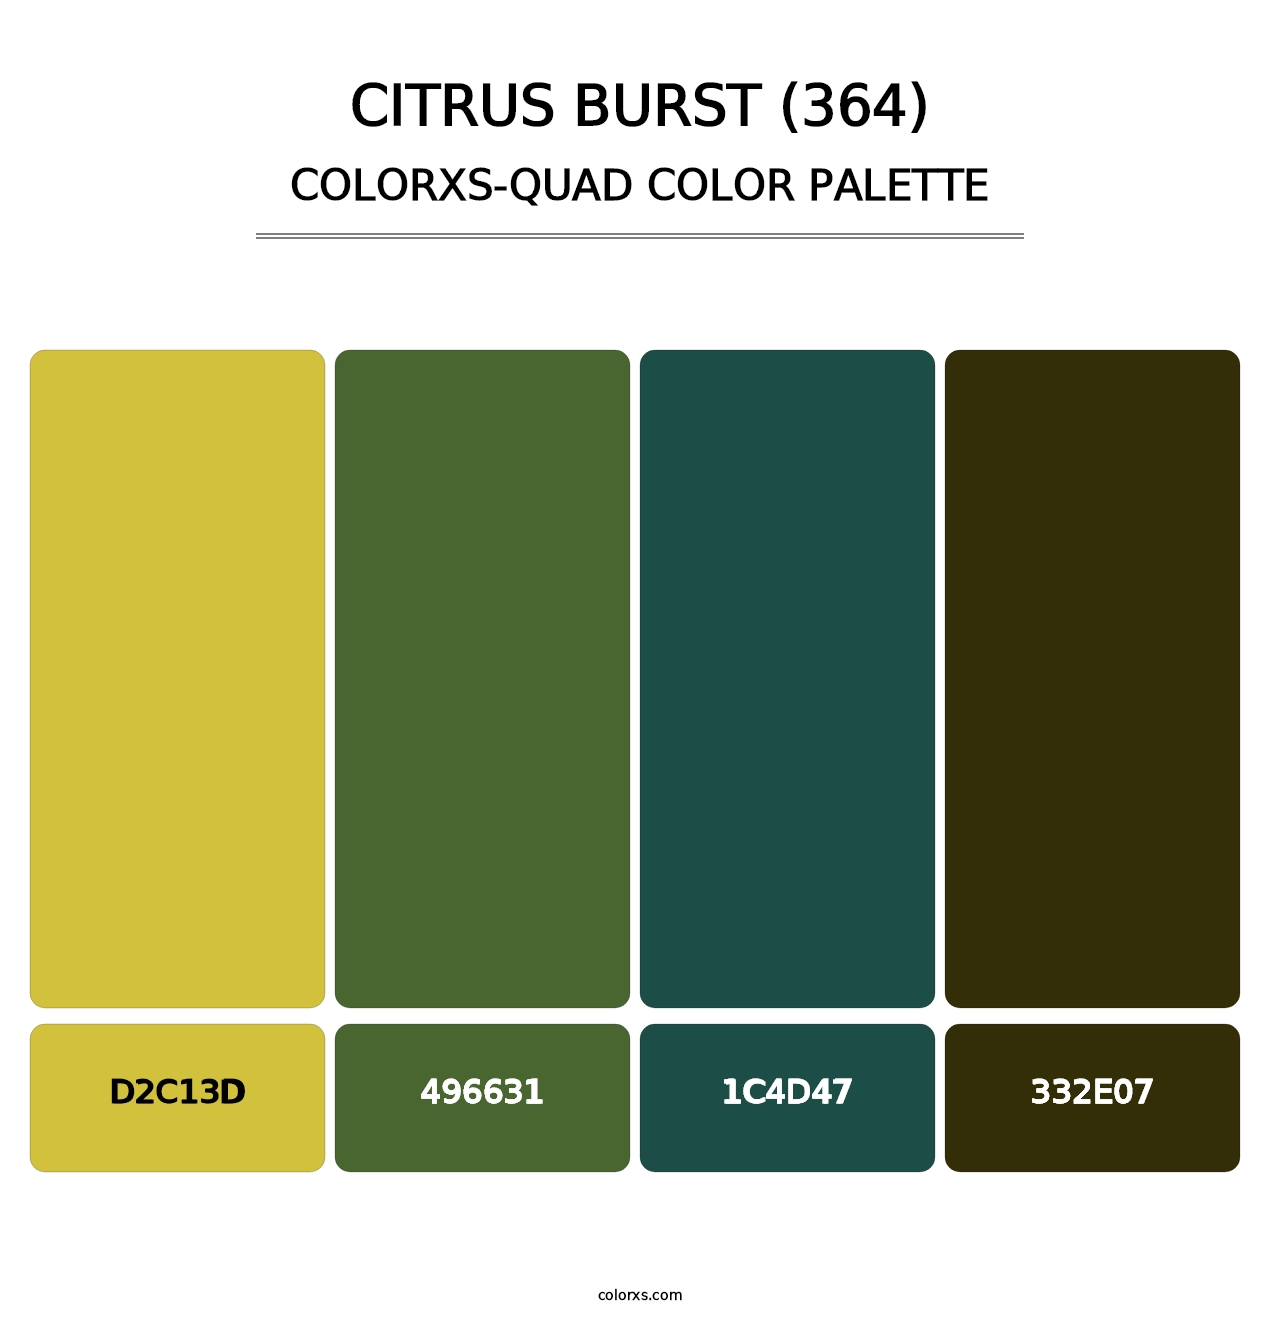 Citrus Burst (364) - Colorxs Quad Palette